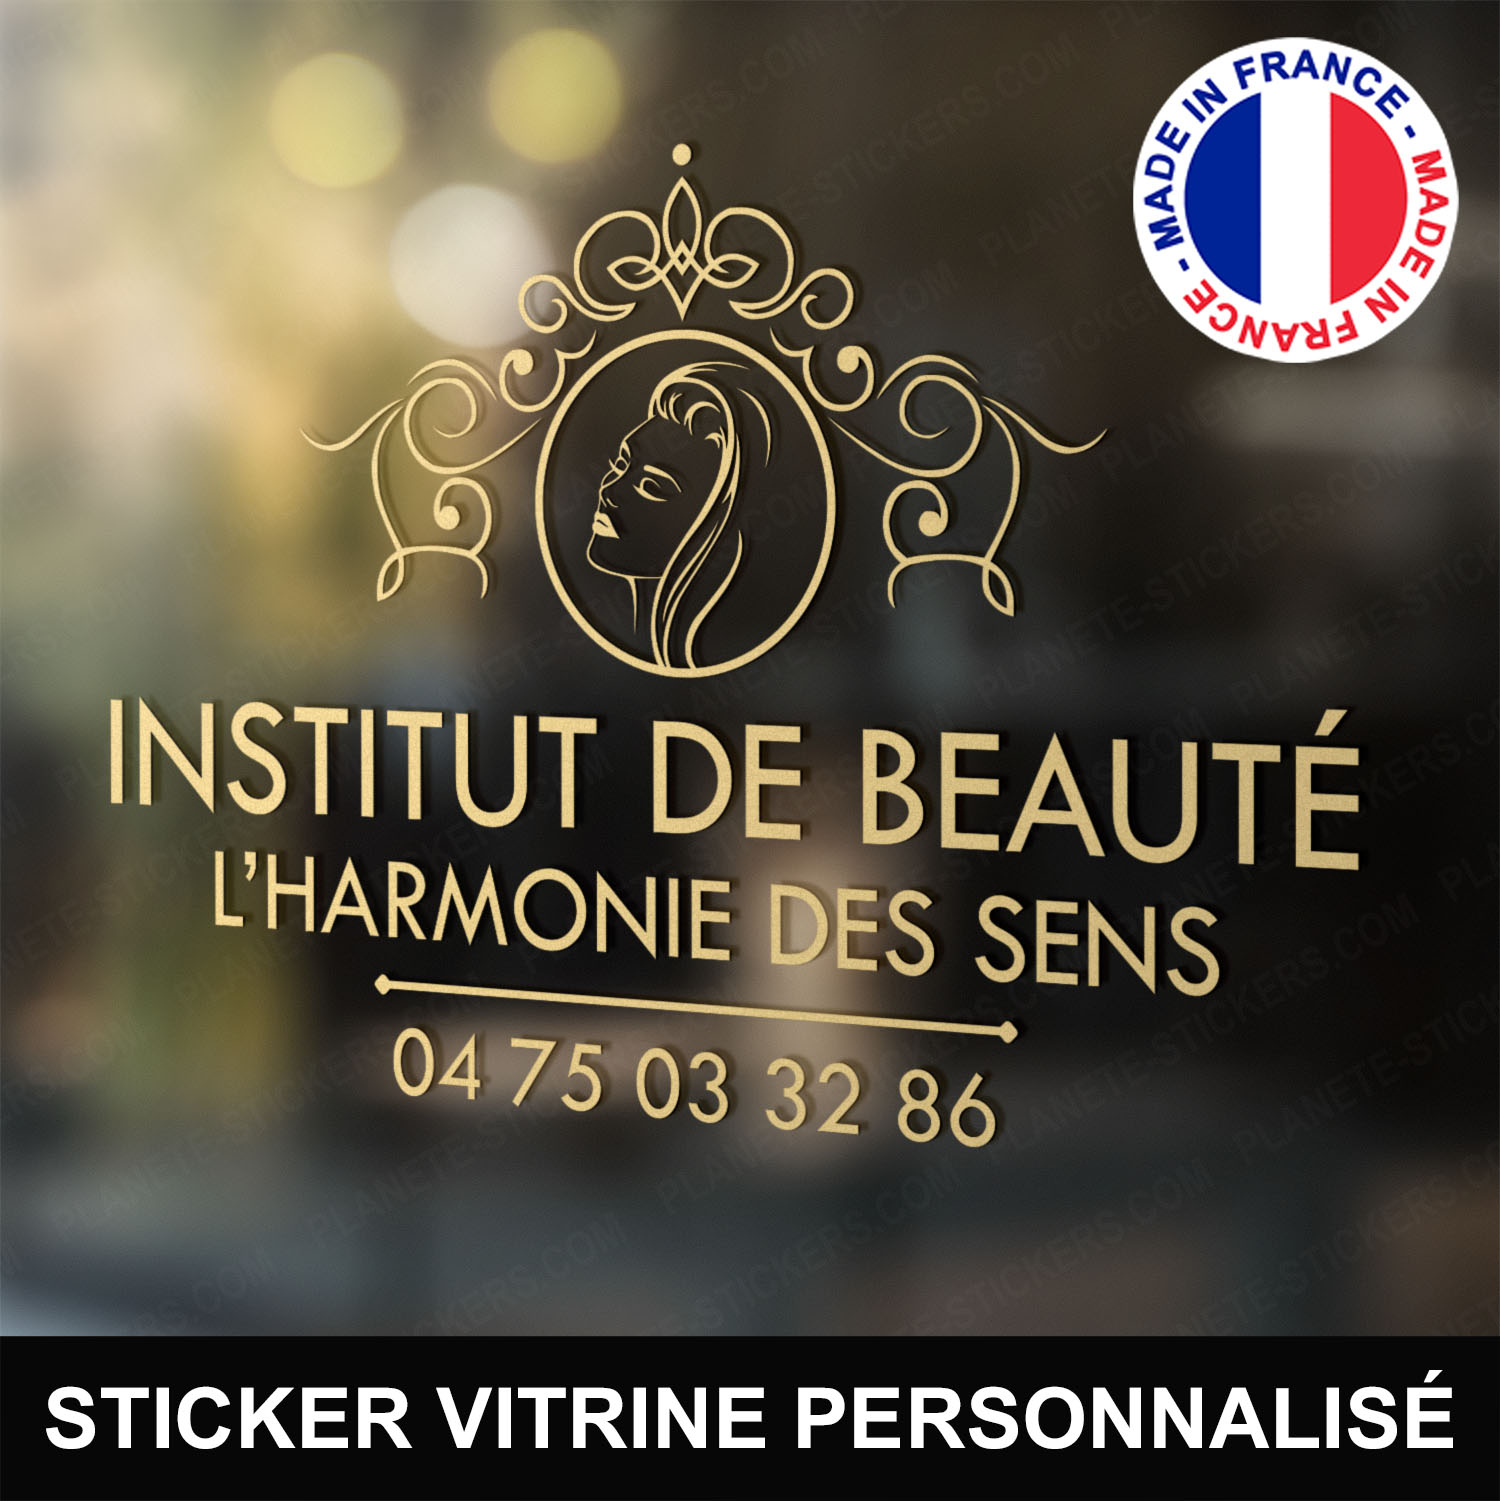 ref3institutdebeautevitrine-stickers-vitrine-institut-de-beauté-sticker-personnalisé-beaute-autocollant-salon-esthétique-esthéticienne-vitre-vitrophanie-logo-femme